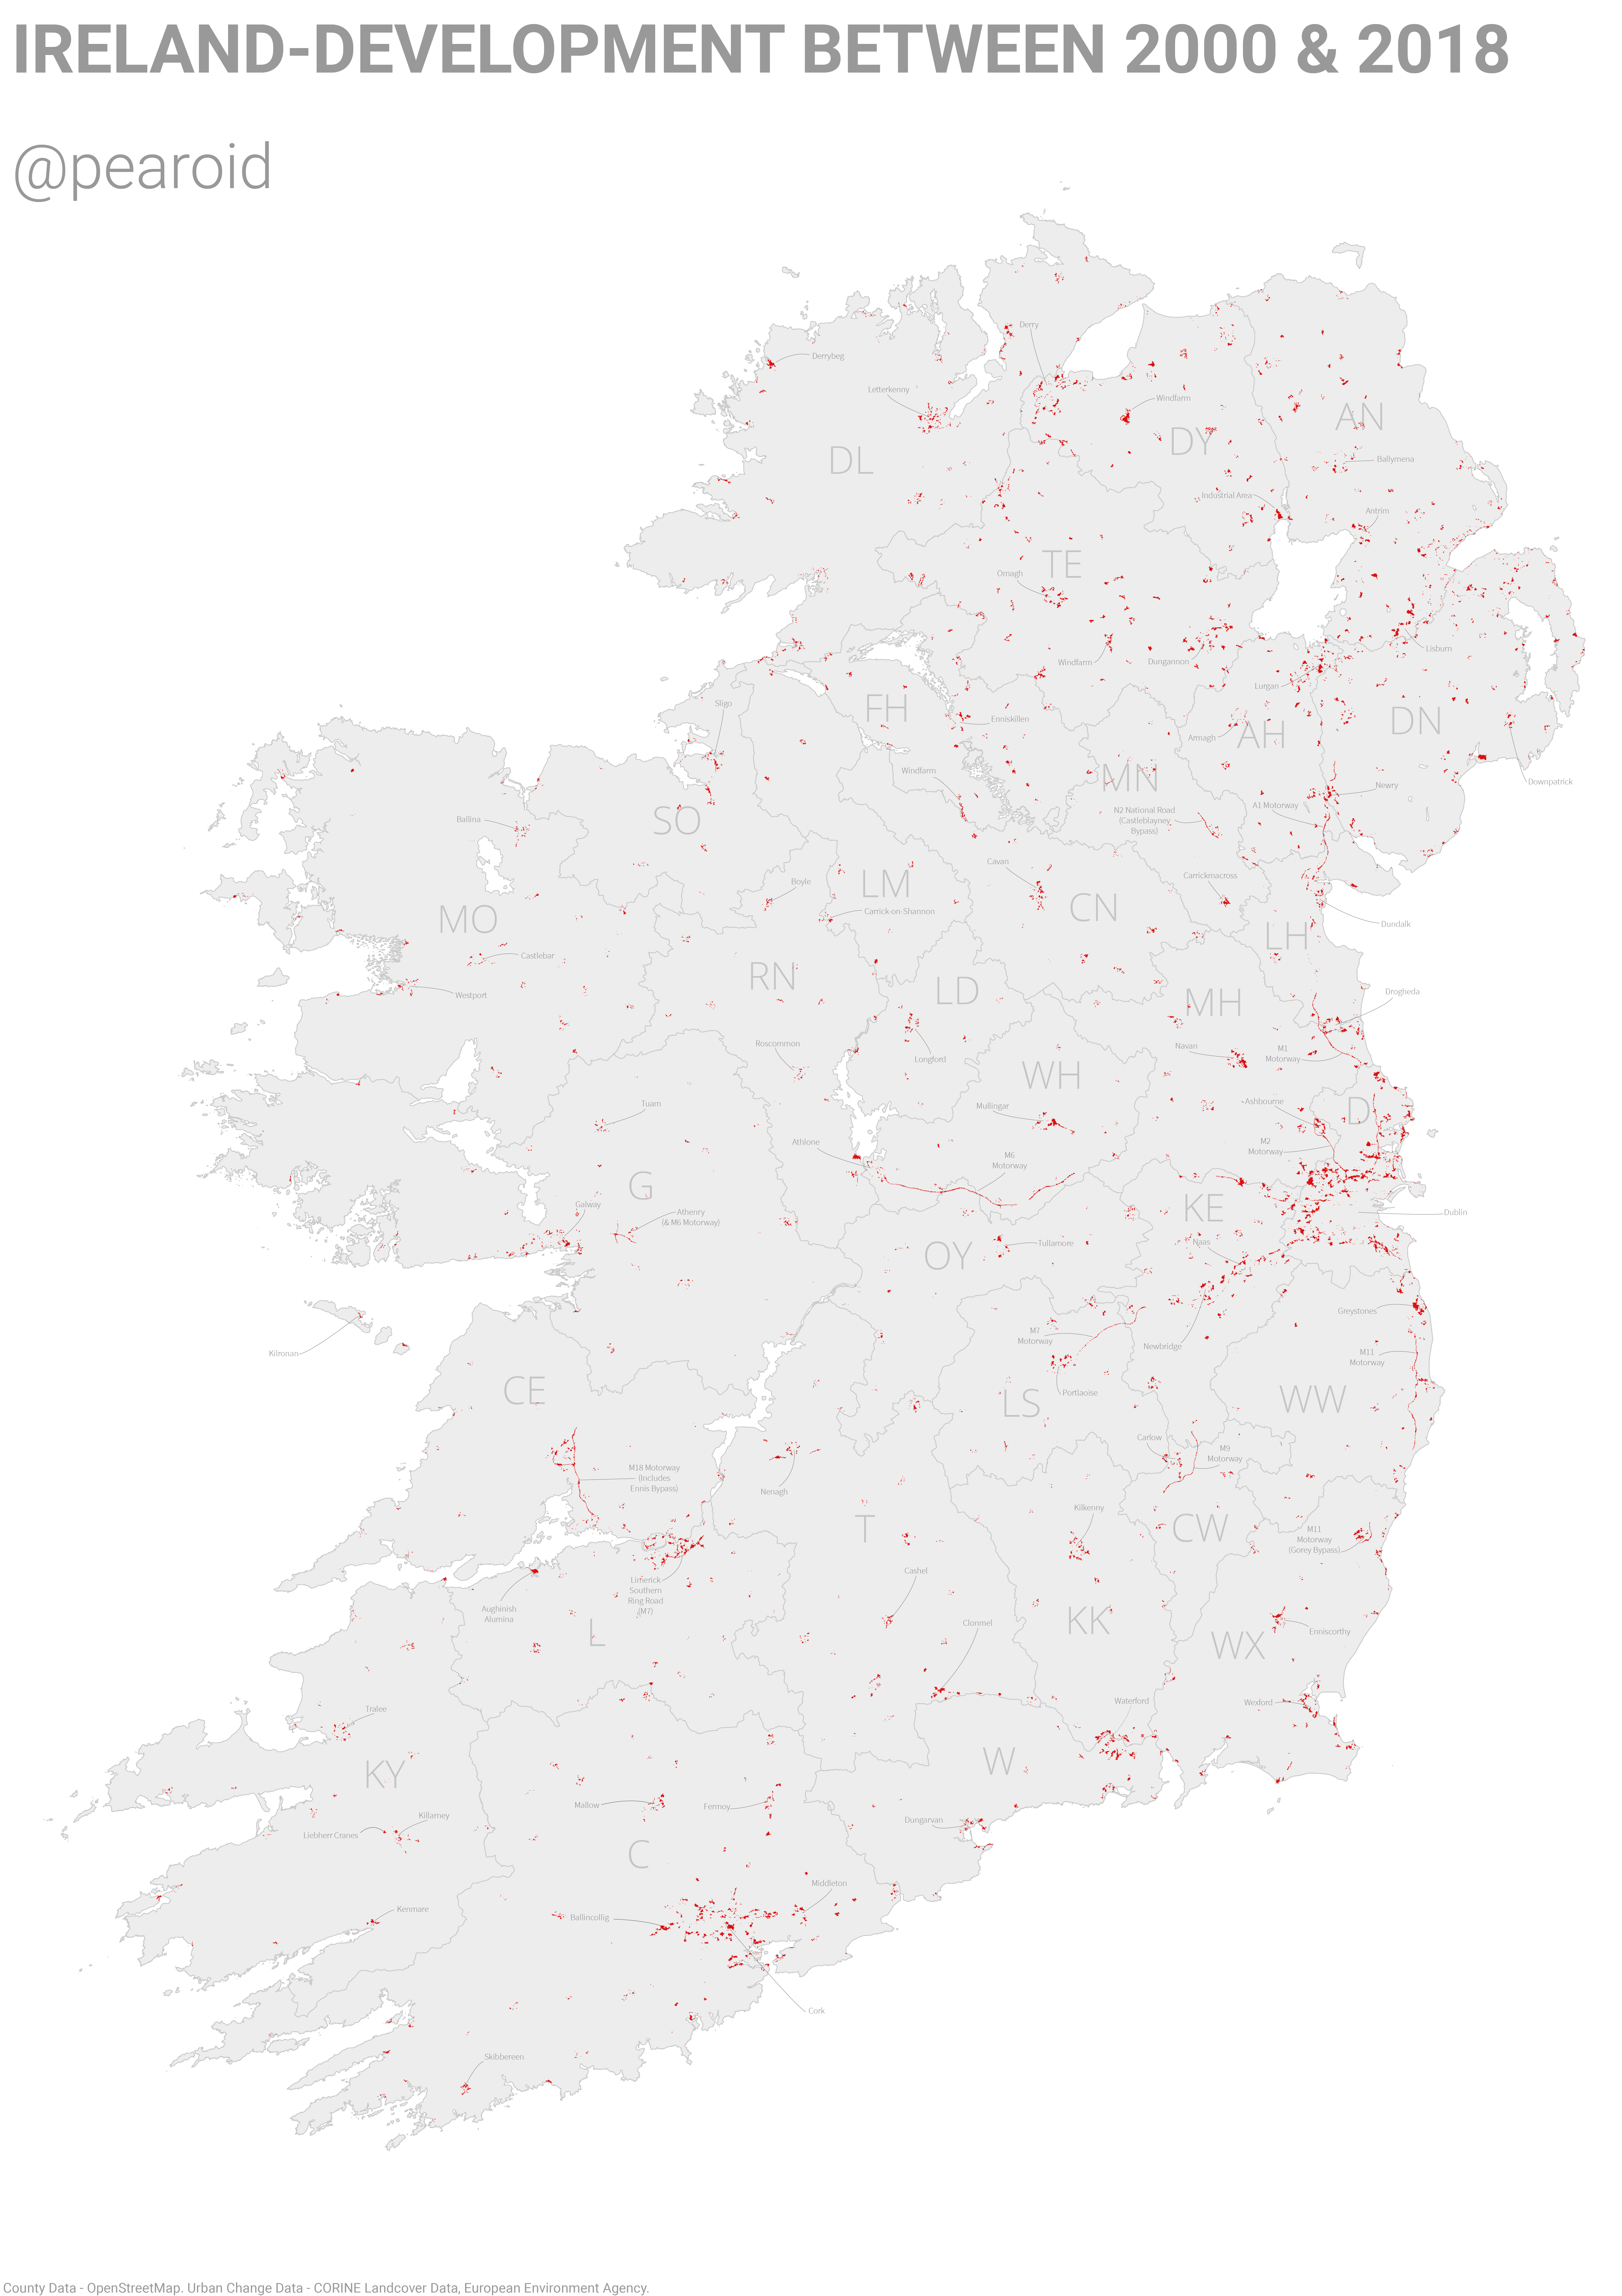 Ireland-Development Between 2000 & 2018